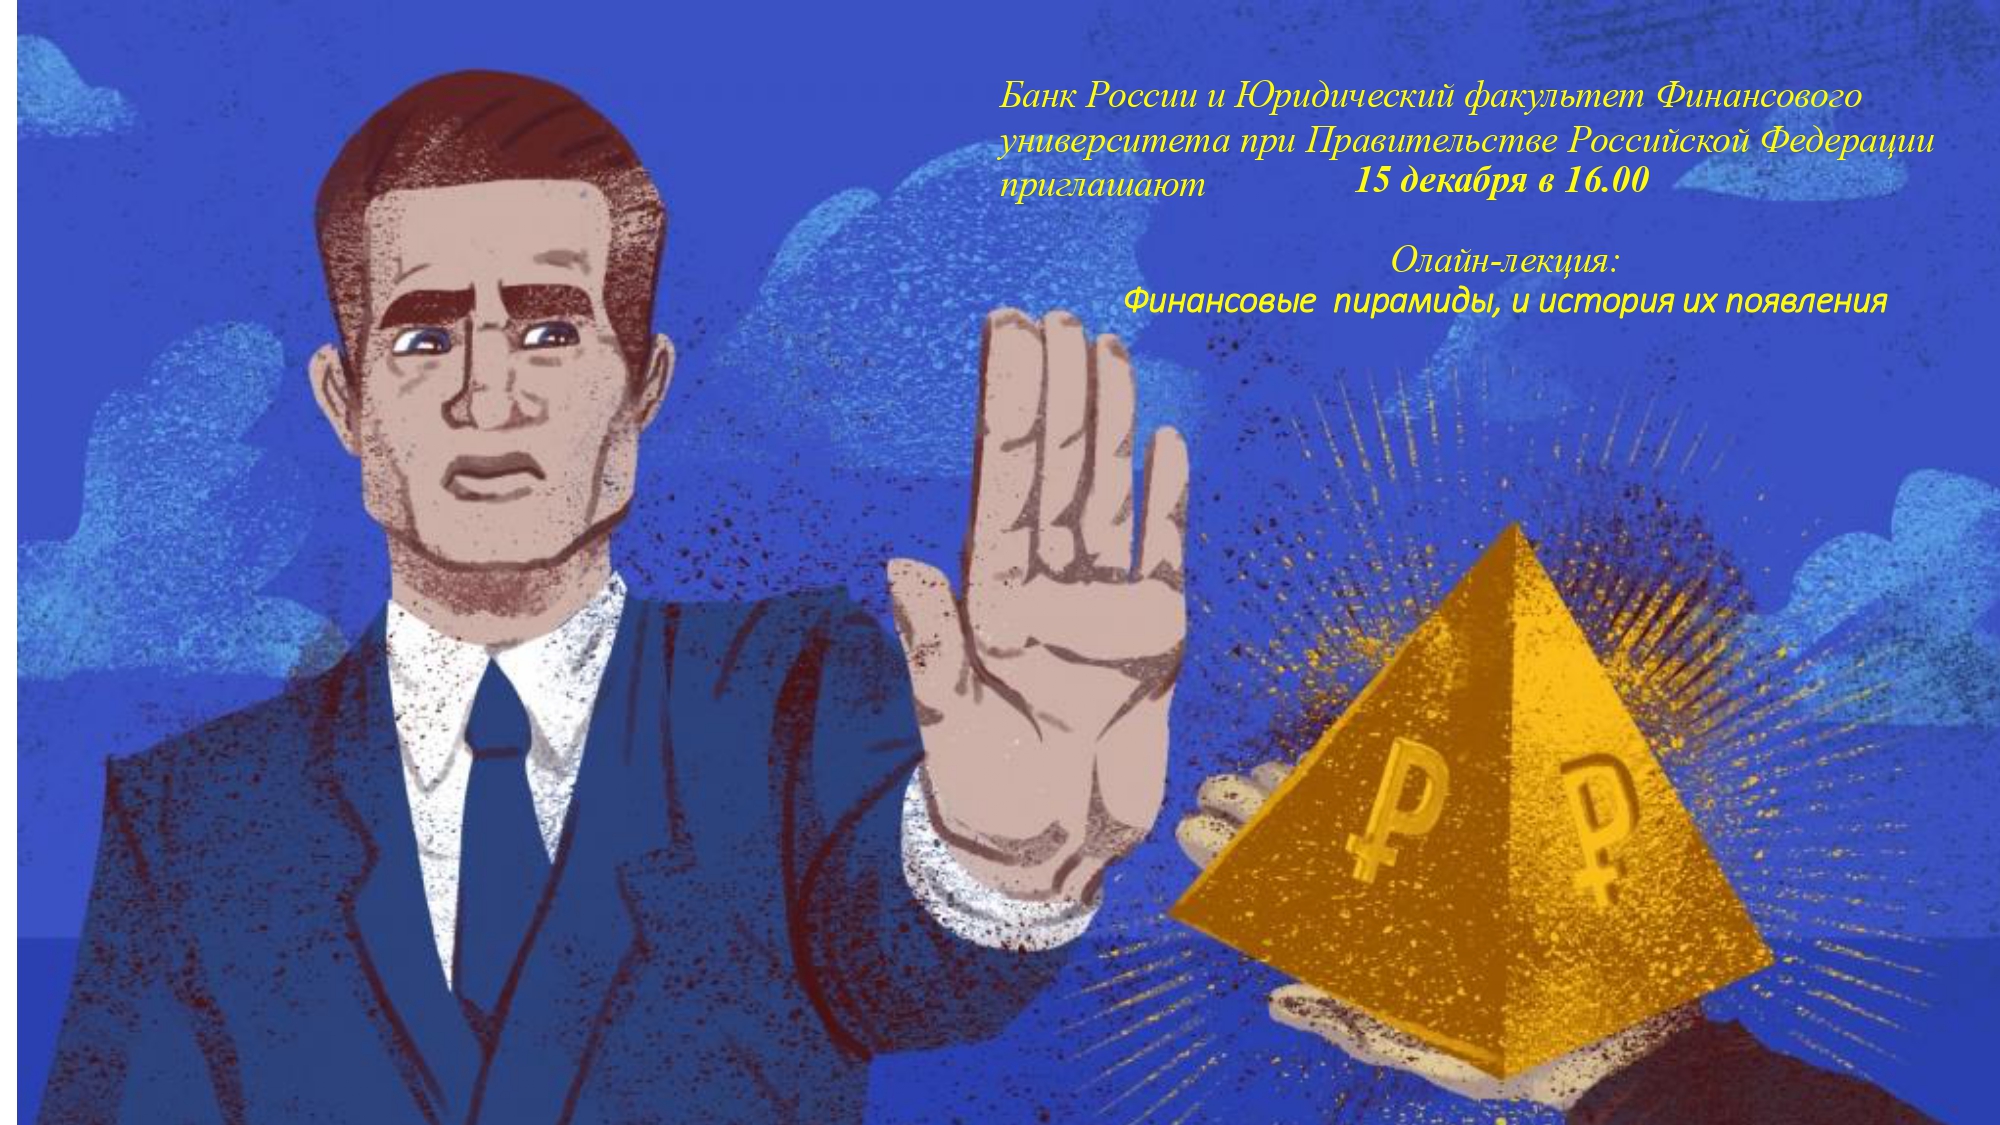 Онлайн-лекция о финансовых пирамидах и истории их появления